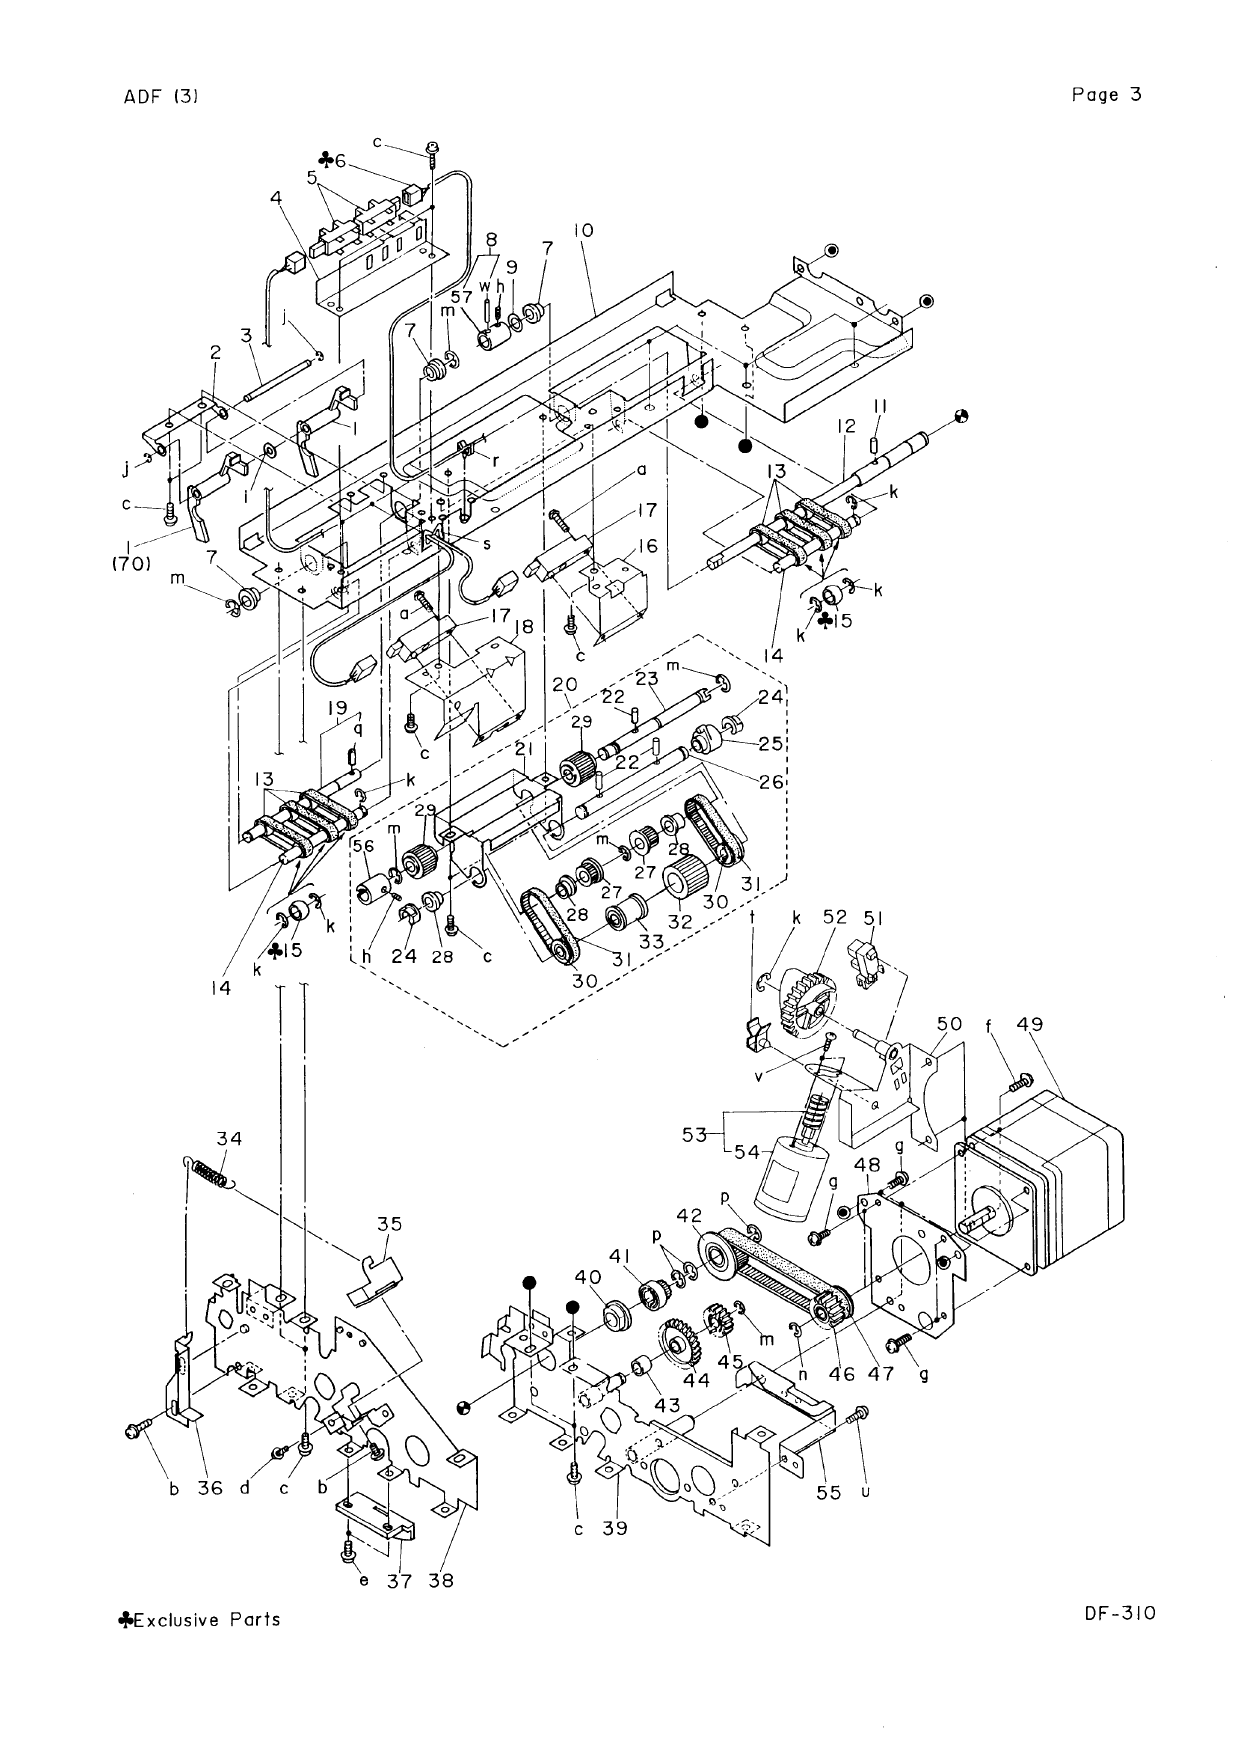 Konica-Minolta Options DF-310 Parts Manual-6